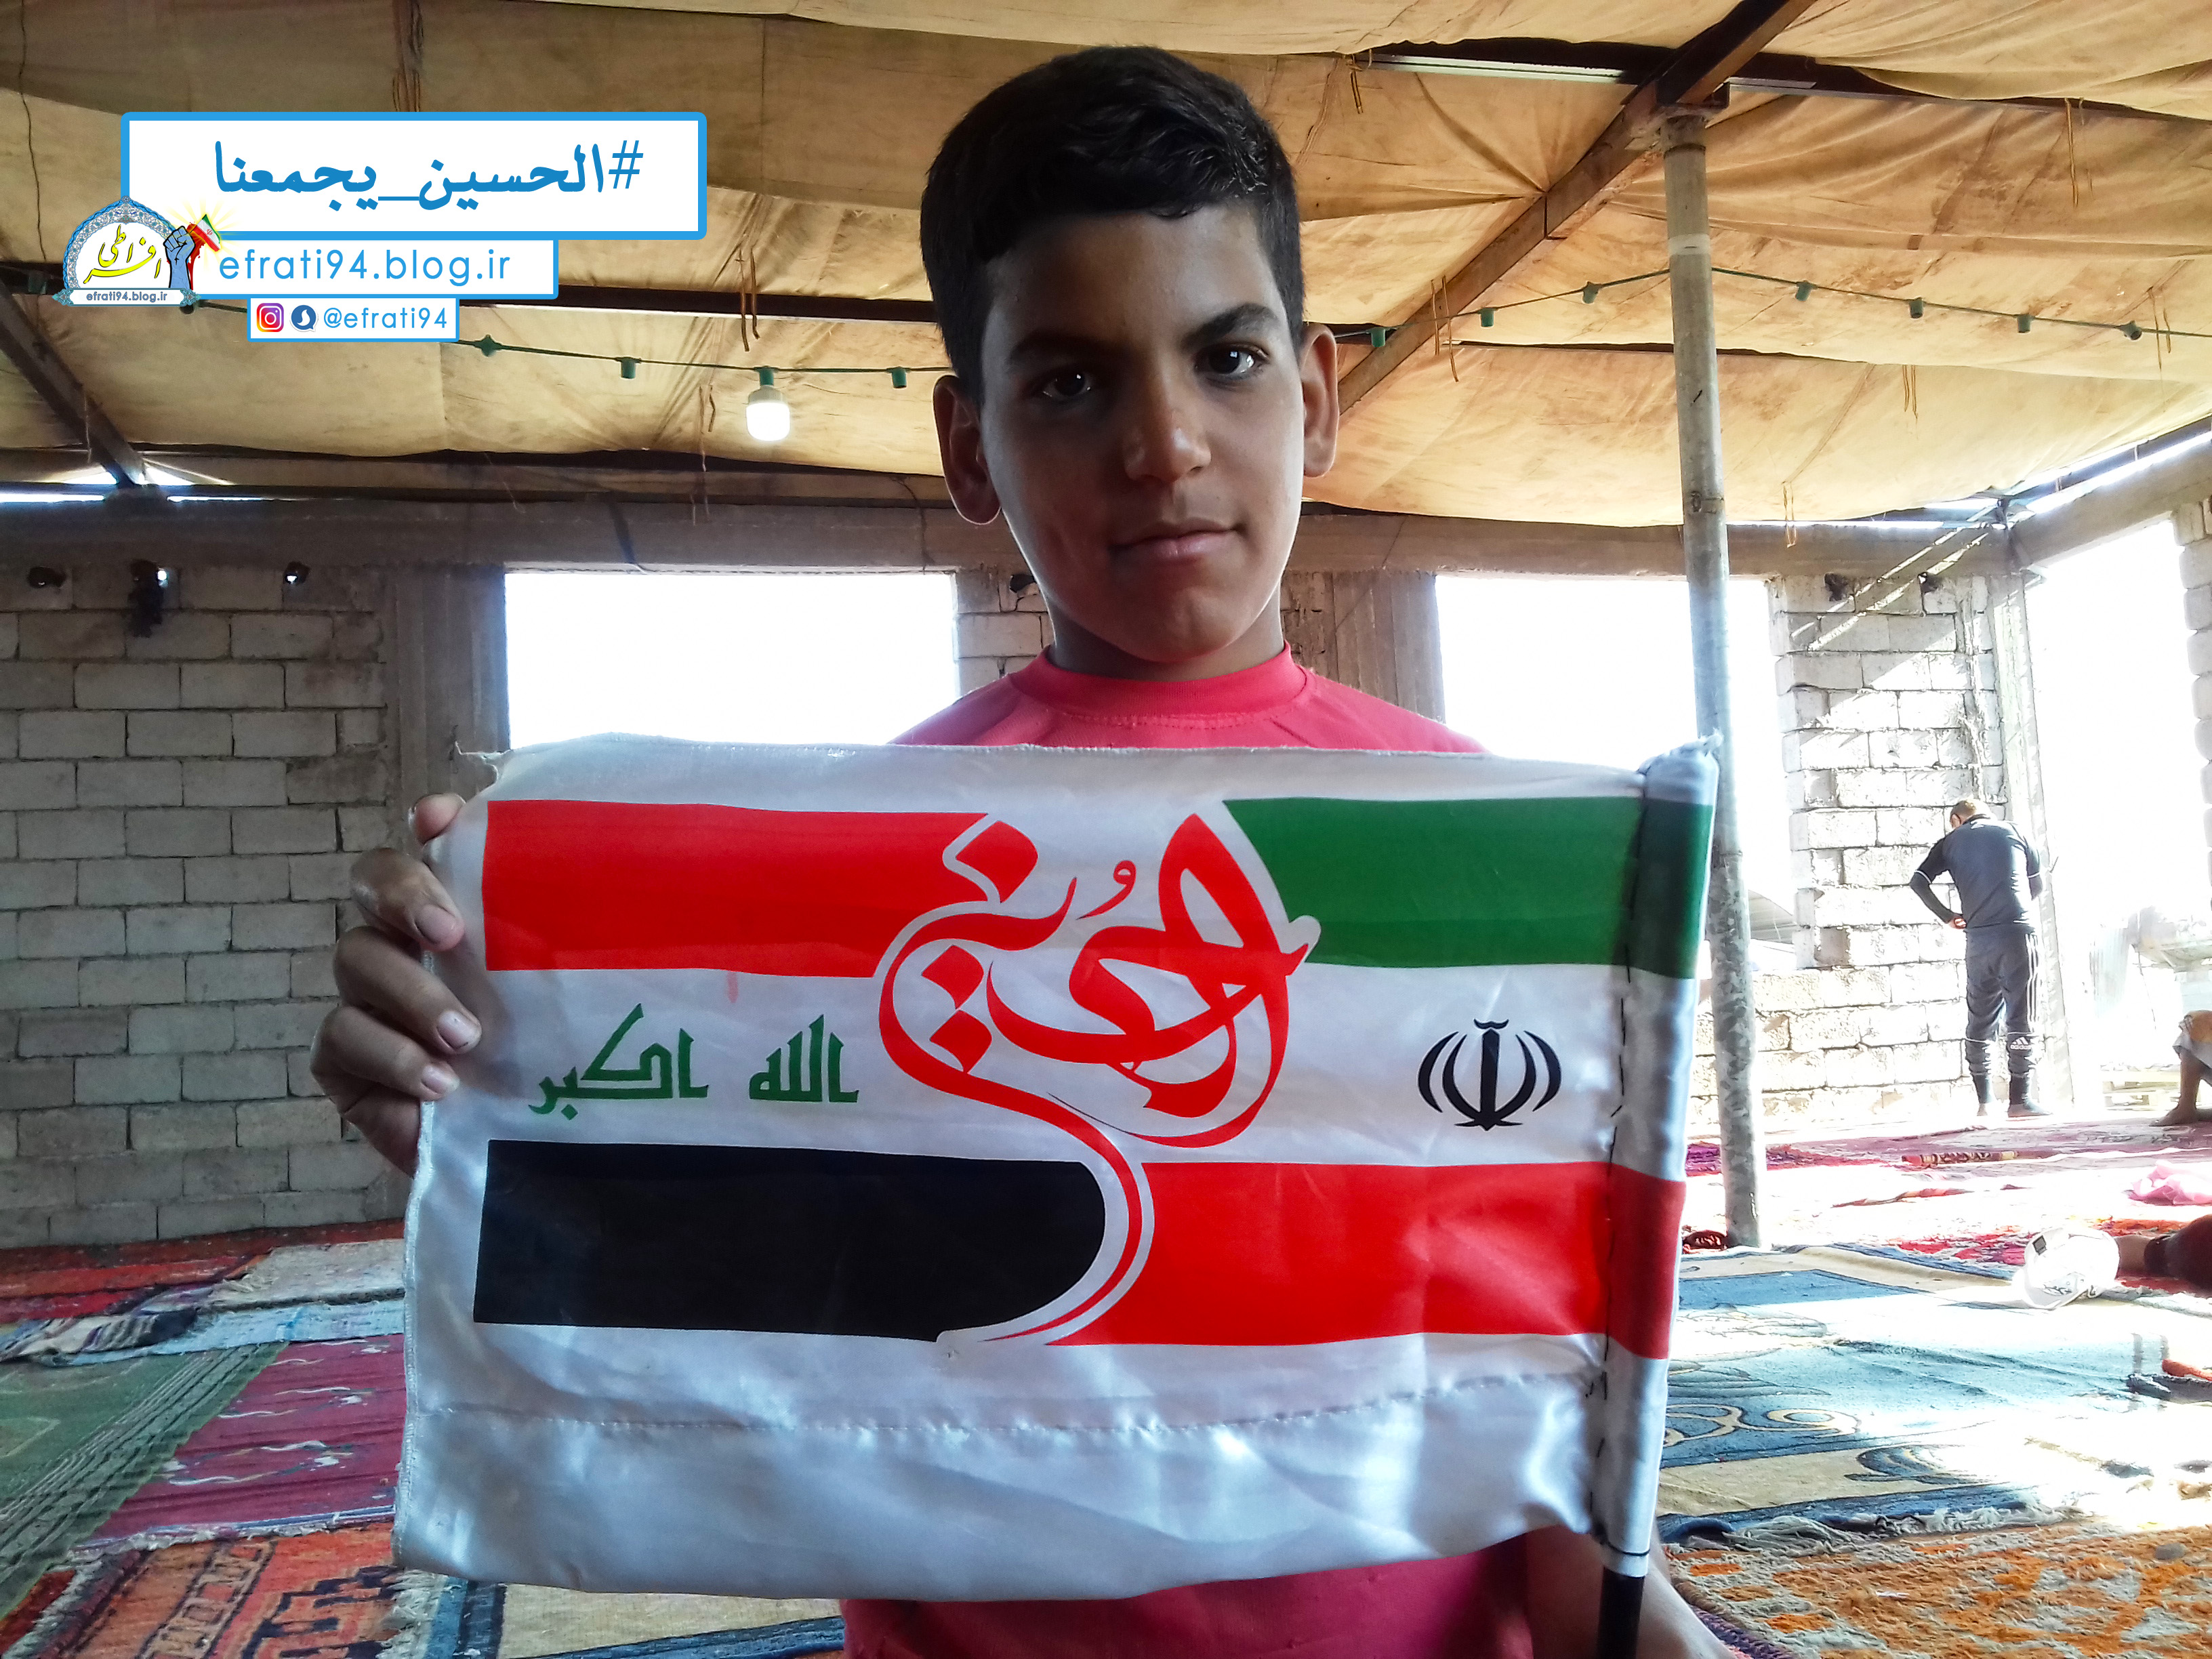 بچه عراقی با پرچم ایران